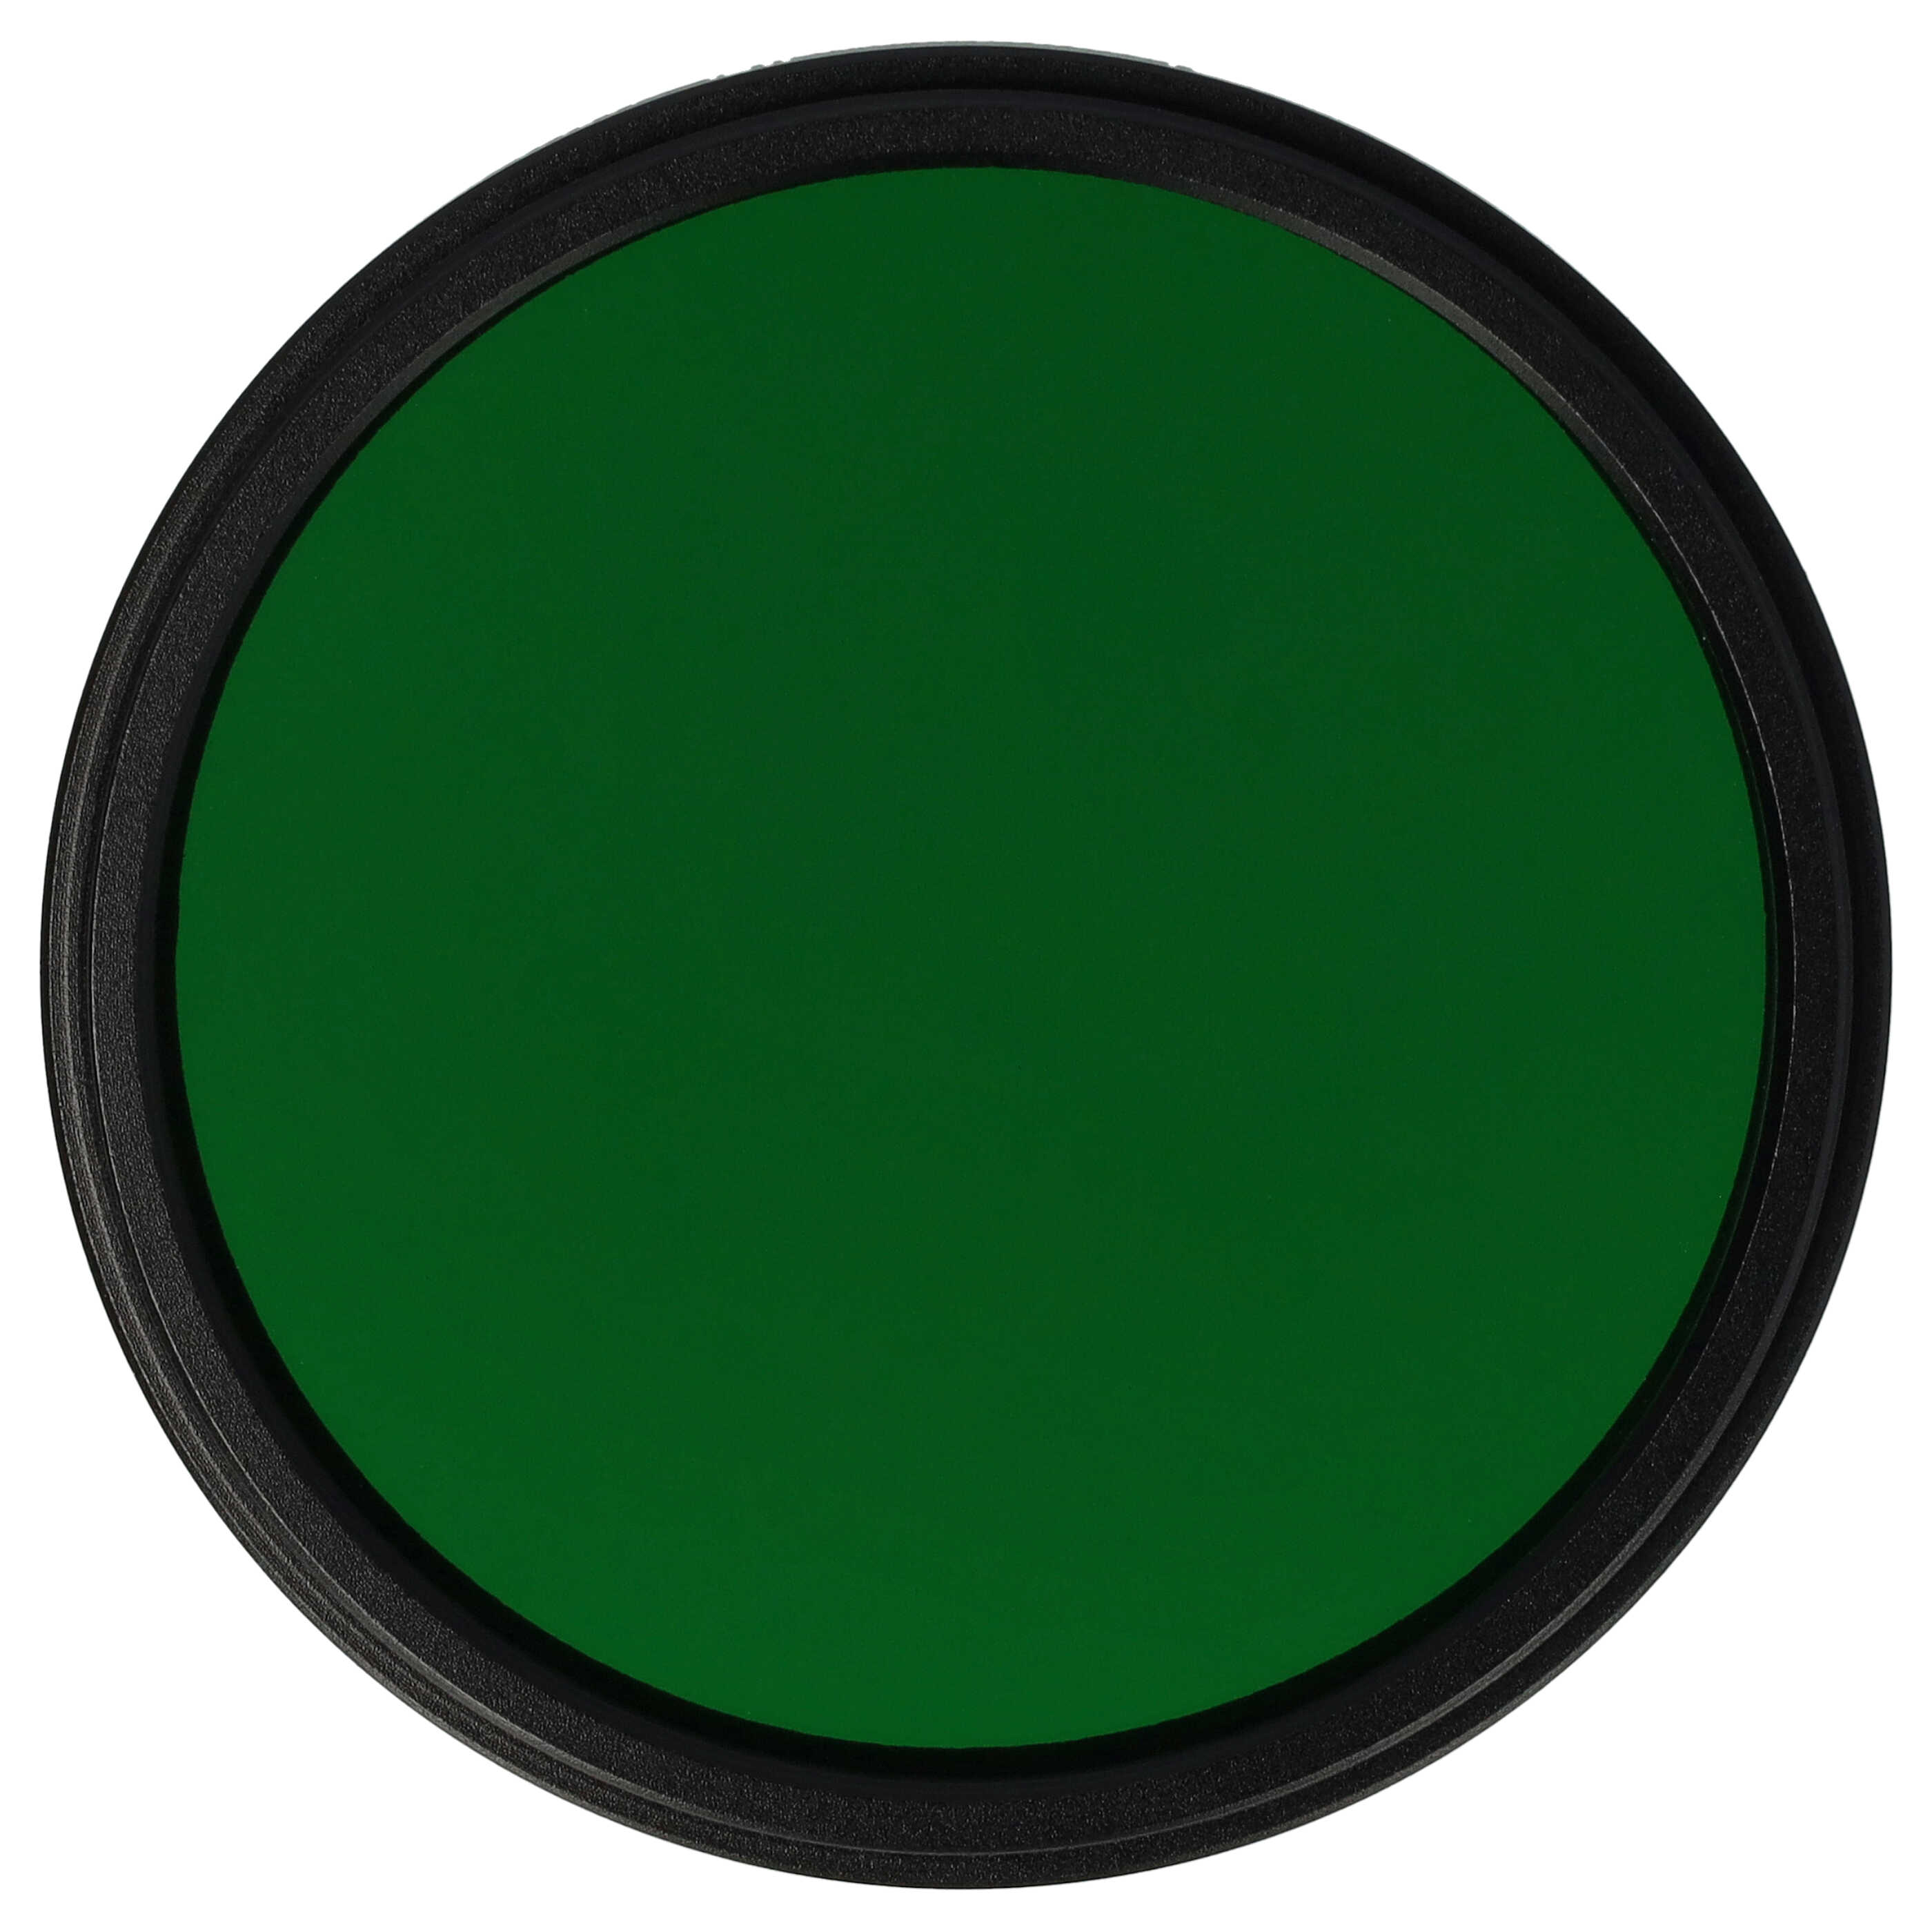 Filtro de color para objetivo de cámara con rosca de filtro de 55 mm - Filtro verde